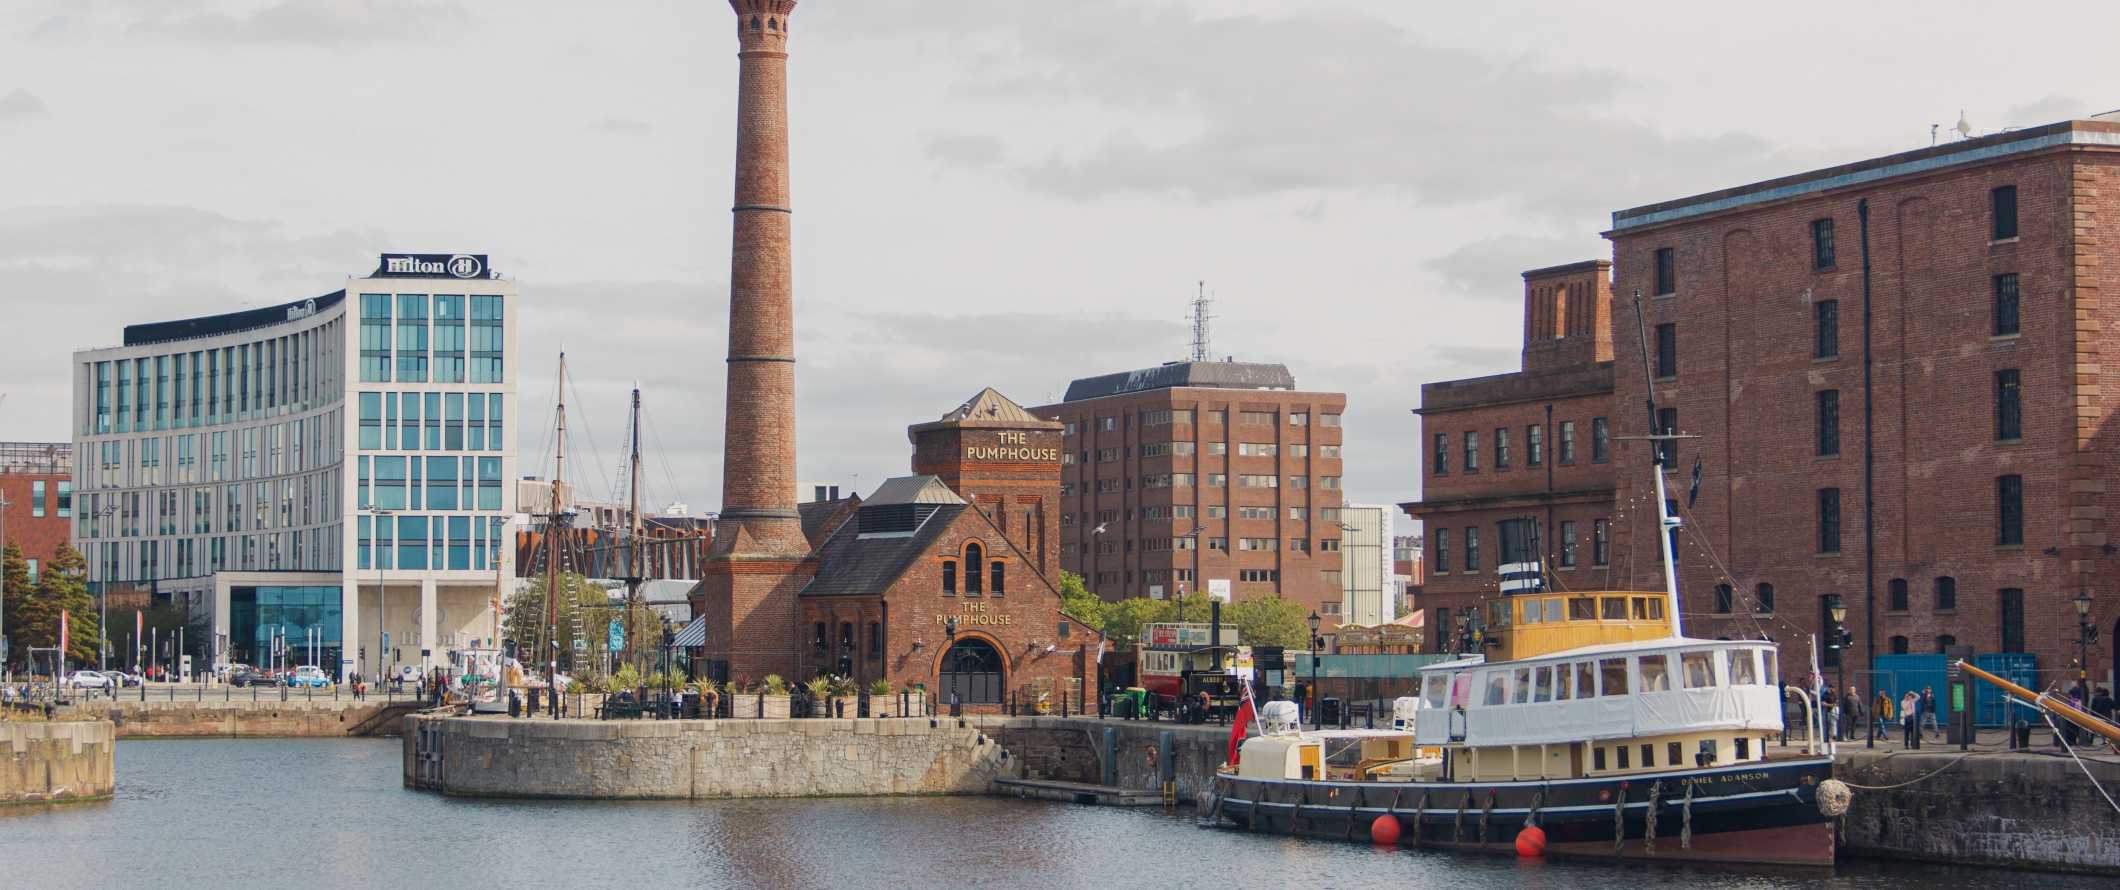 Navio histórico, armazéns e uma torre de água no Dock Royal Albert em Liverpool, Inglaterra